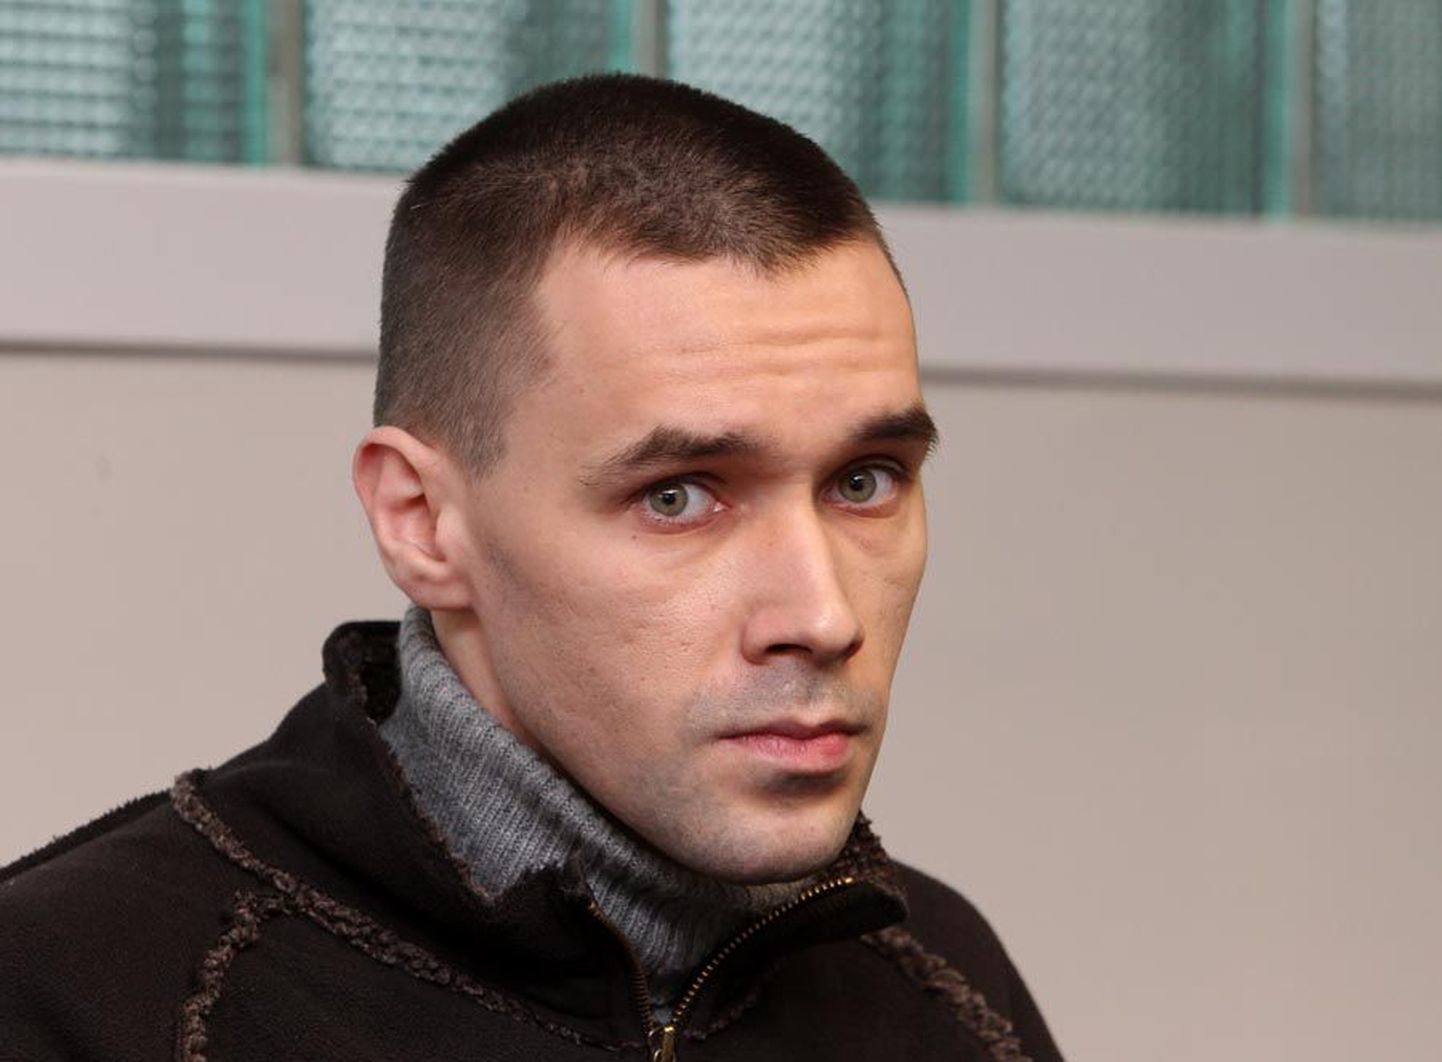 Vjatšeslav Bajukile määrati eile Harju maakohtus kuritööde eest karistus.